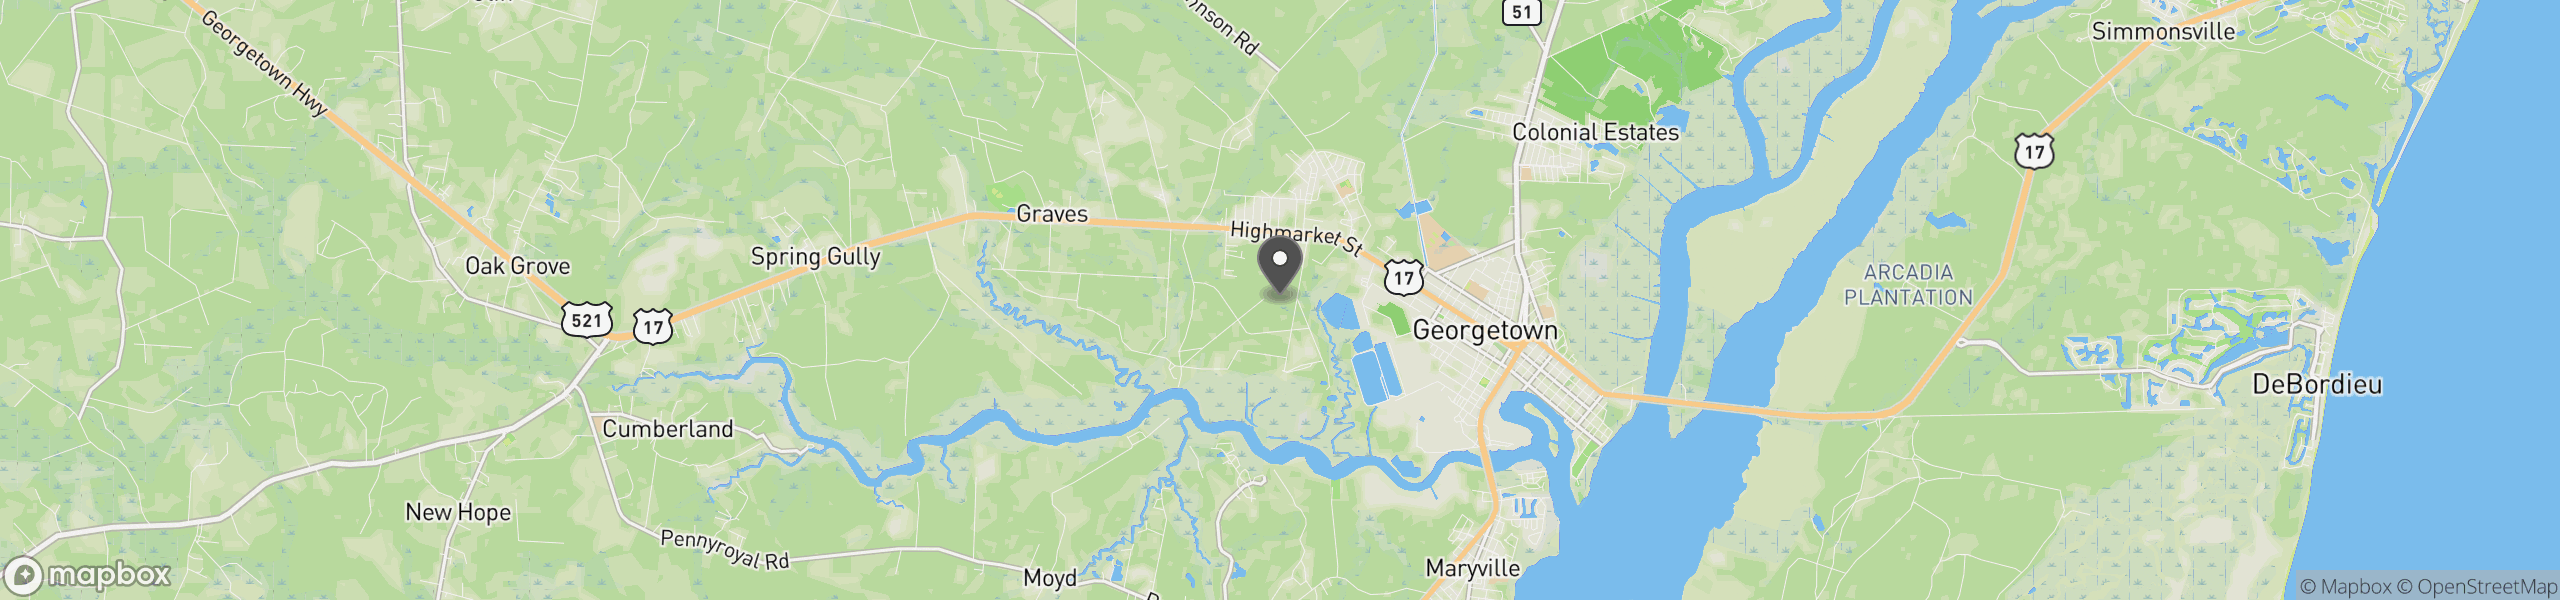 Georgetown, SC 29440